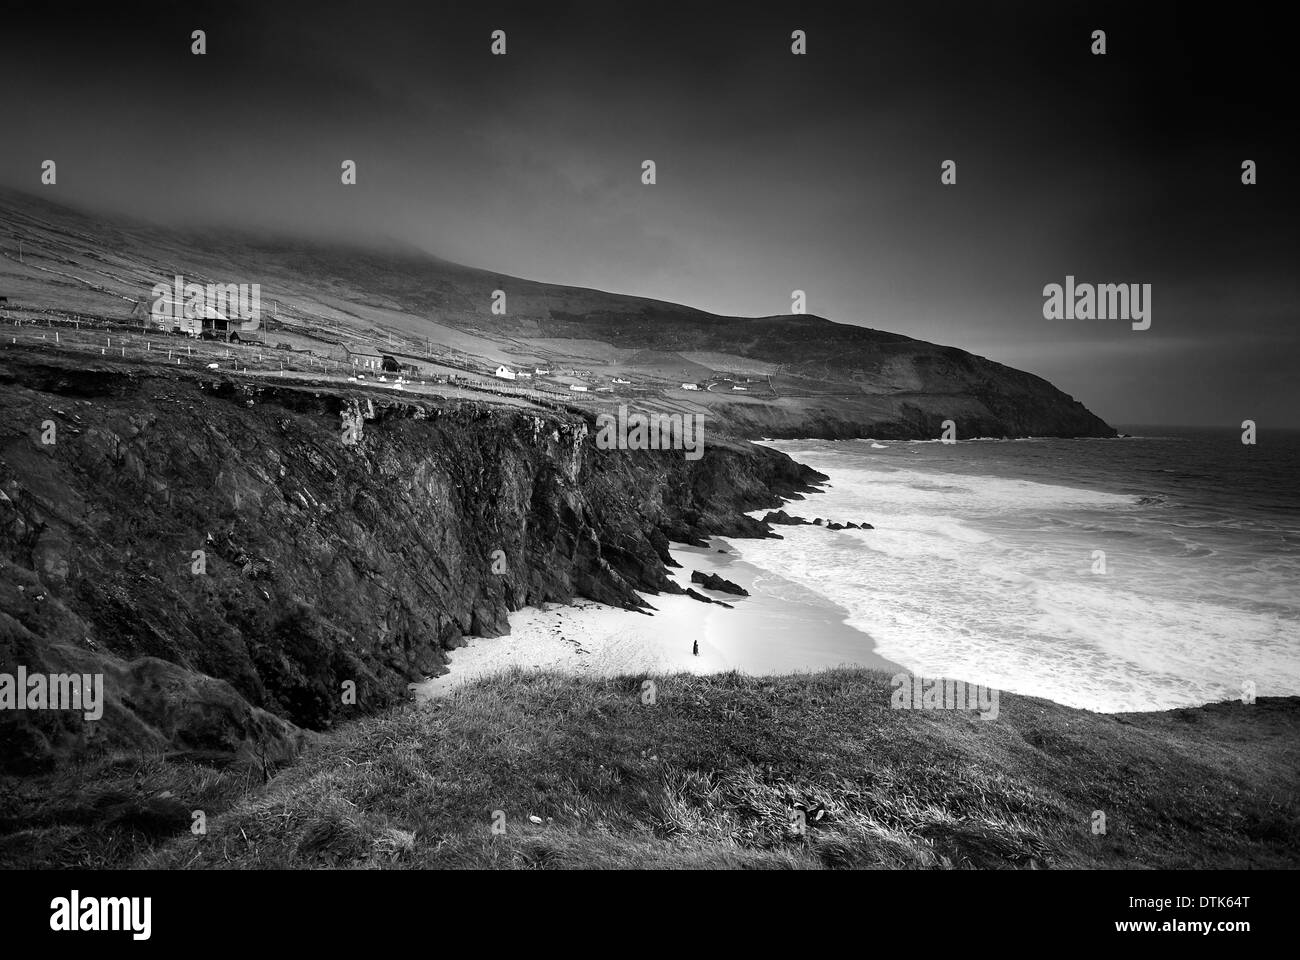 Photo en noir et blanc prises à Dingle, Kerry, Irlande, une personne seule dans la photo Banque D'Images